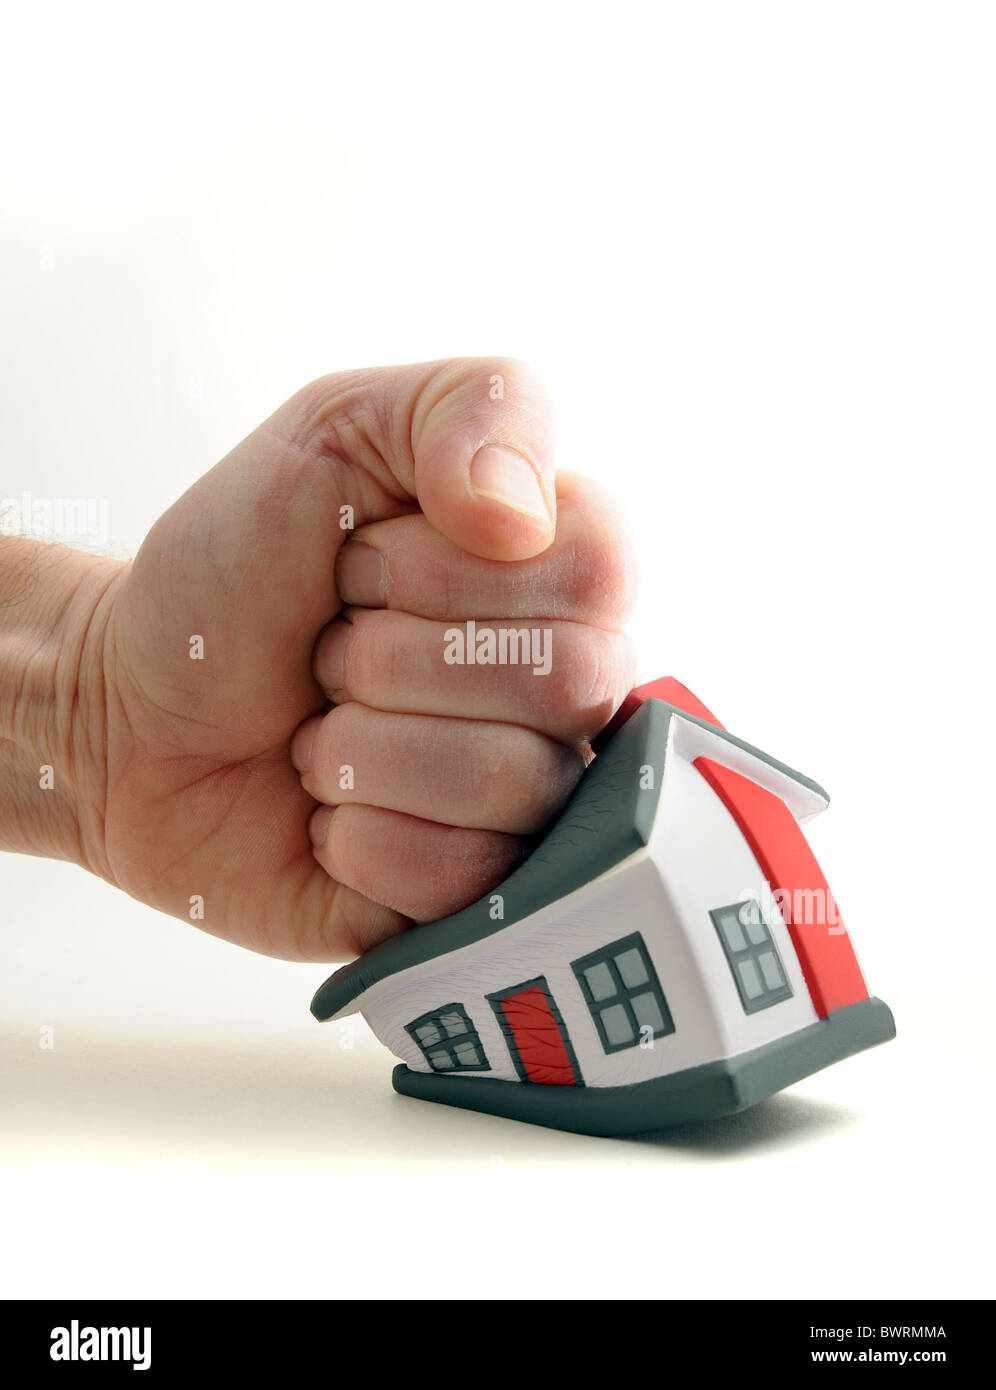 Casa APRETUJADO/AFECTADOS POR MANS Fist vuelve del mercado de la vivienda,Precios,presupuestos familiares etc. UK Foto de stock